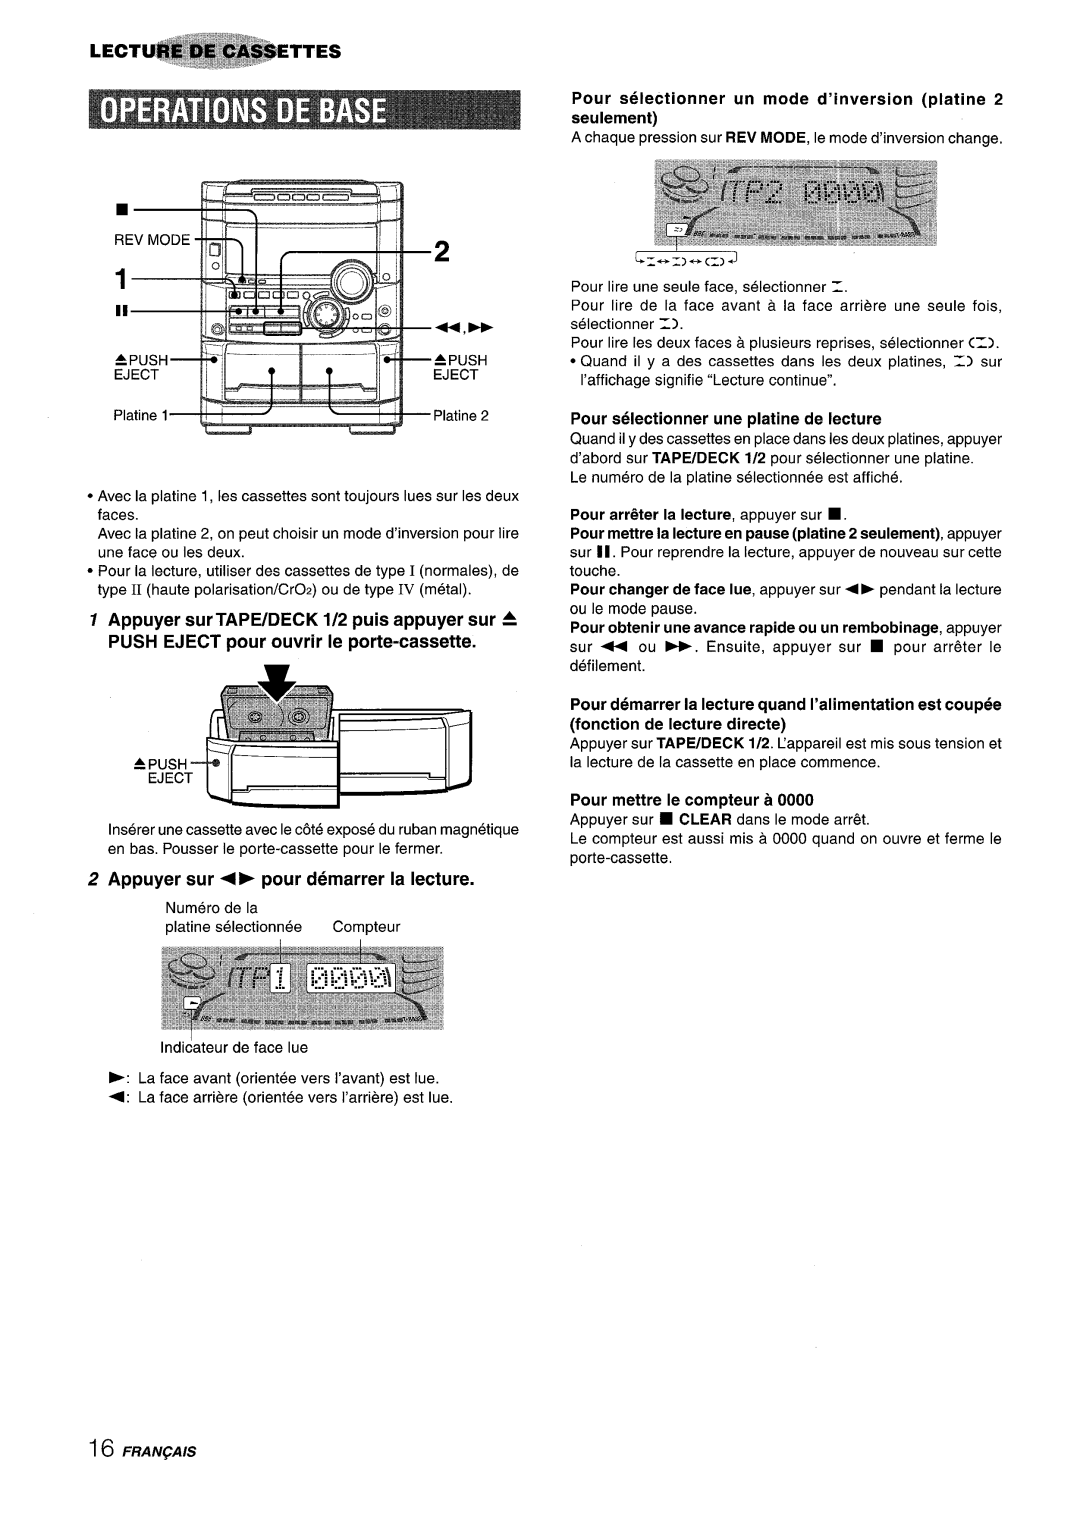 Sony NSX-A767 manual Appuyer sur + pour demarrer la lecture, Pour selectionner un mode d’inversion platine 2 seulement 